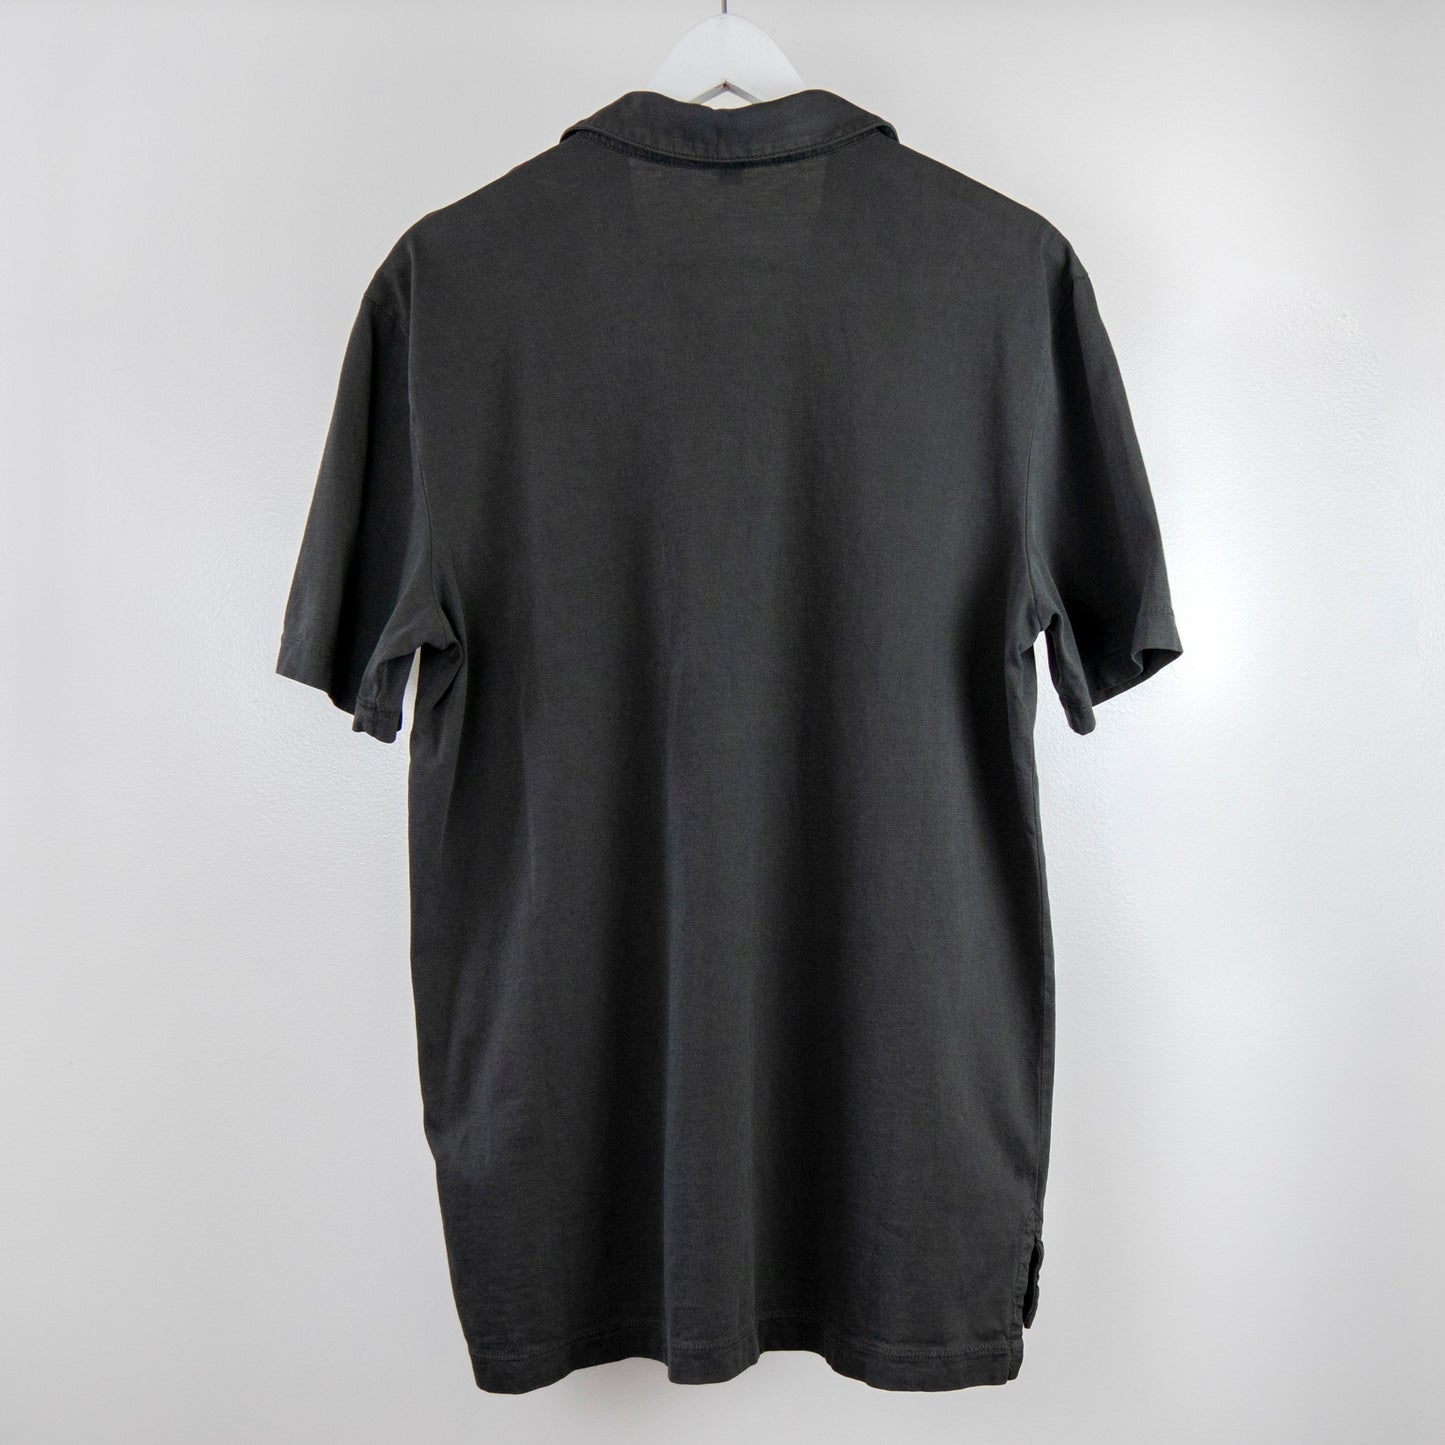 James Perse - Classic Linen Shirt - Carbon Pigment